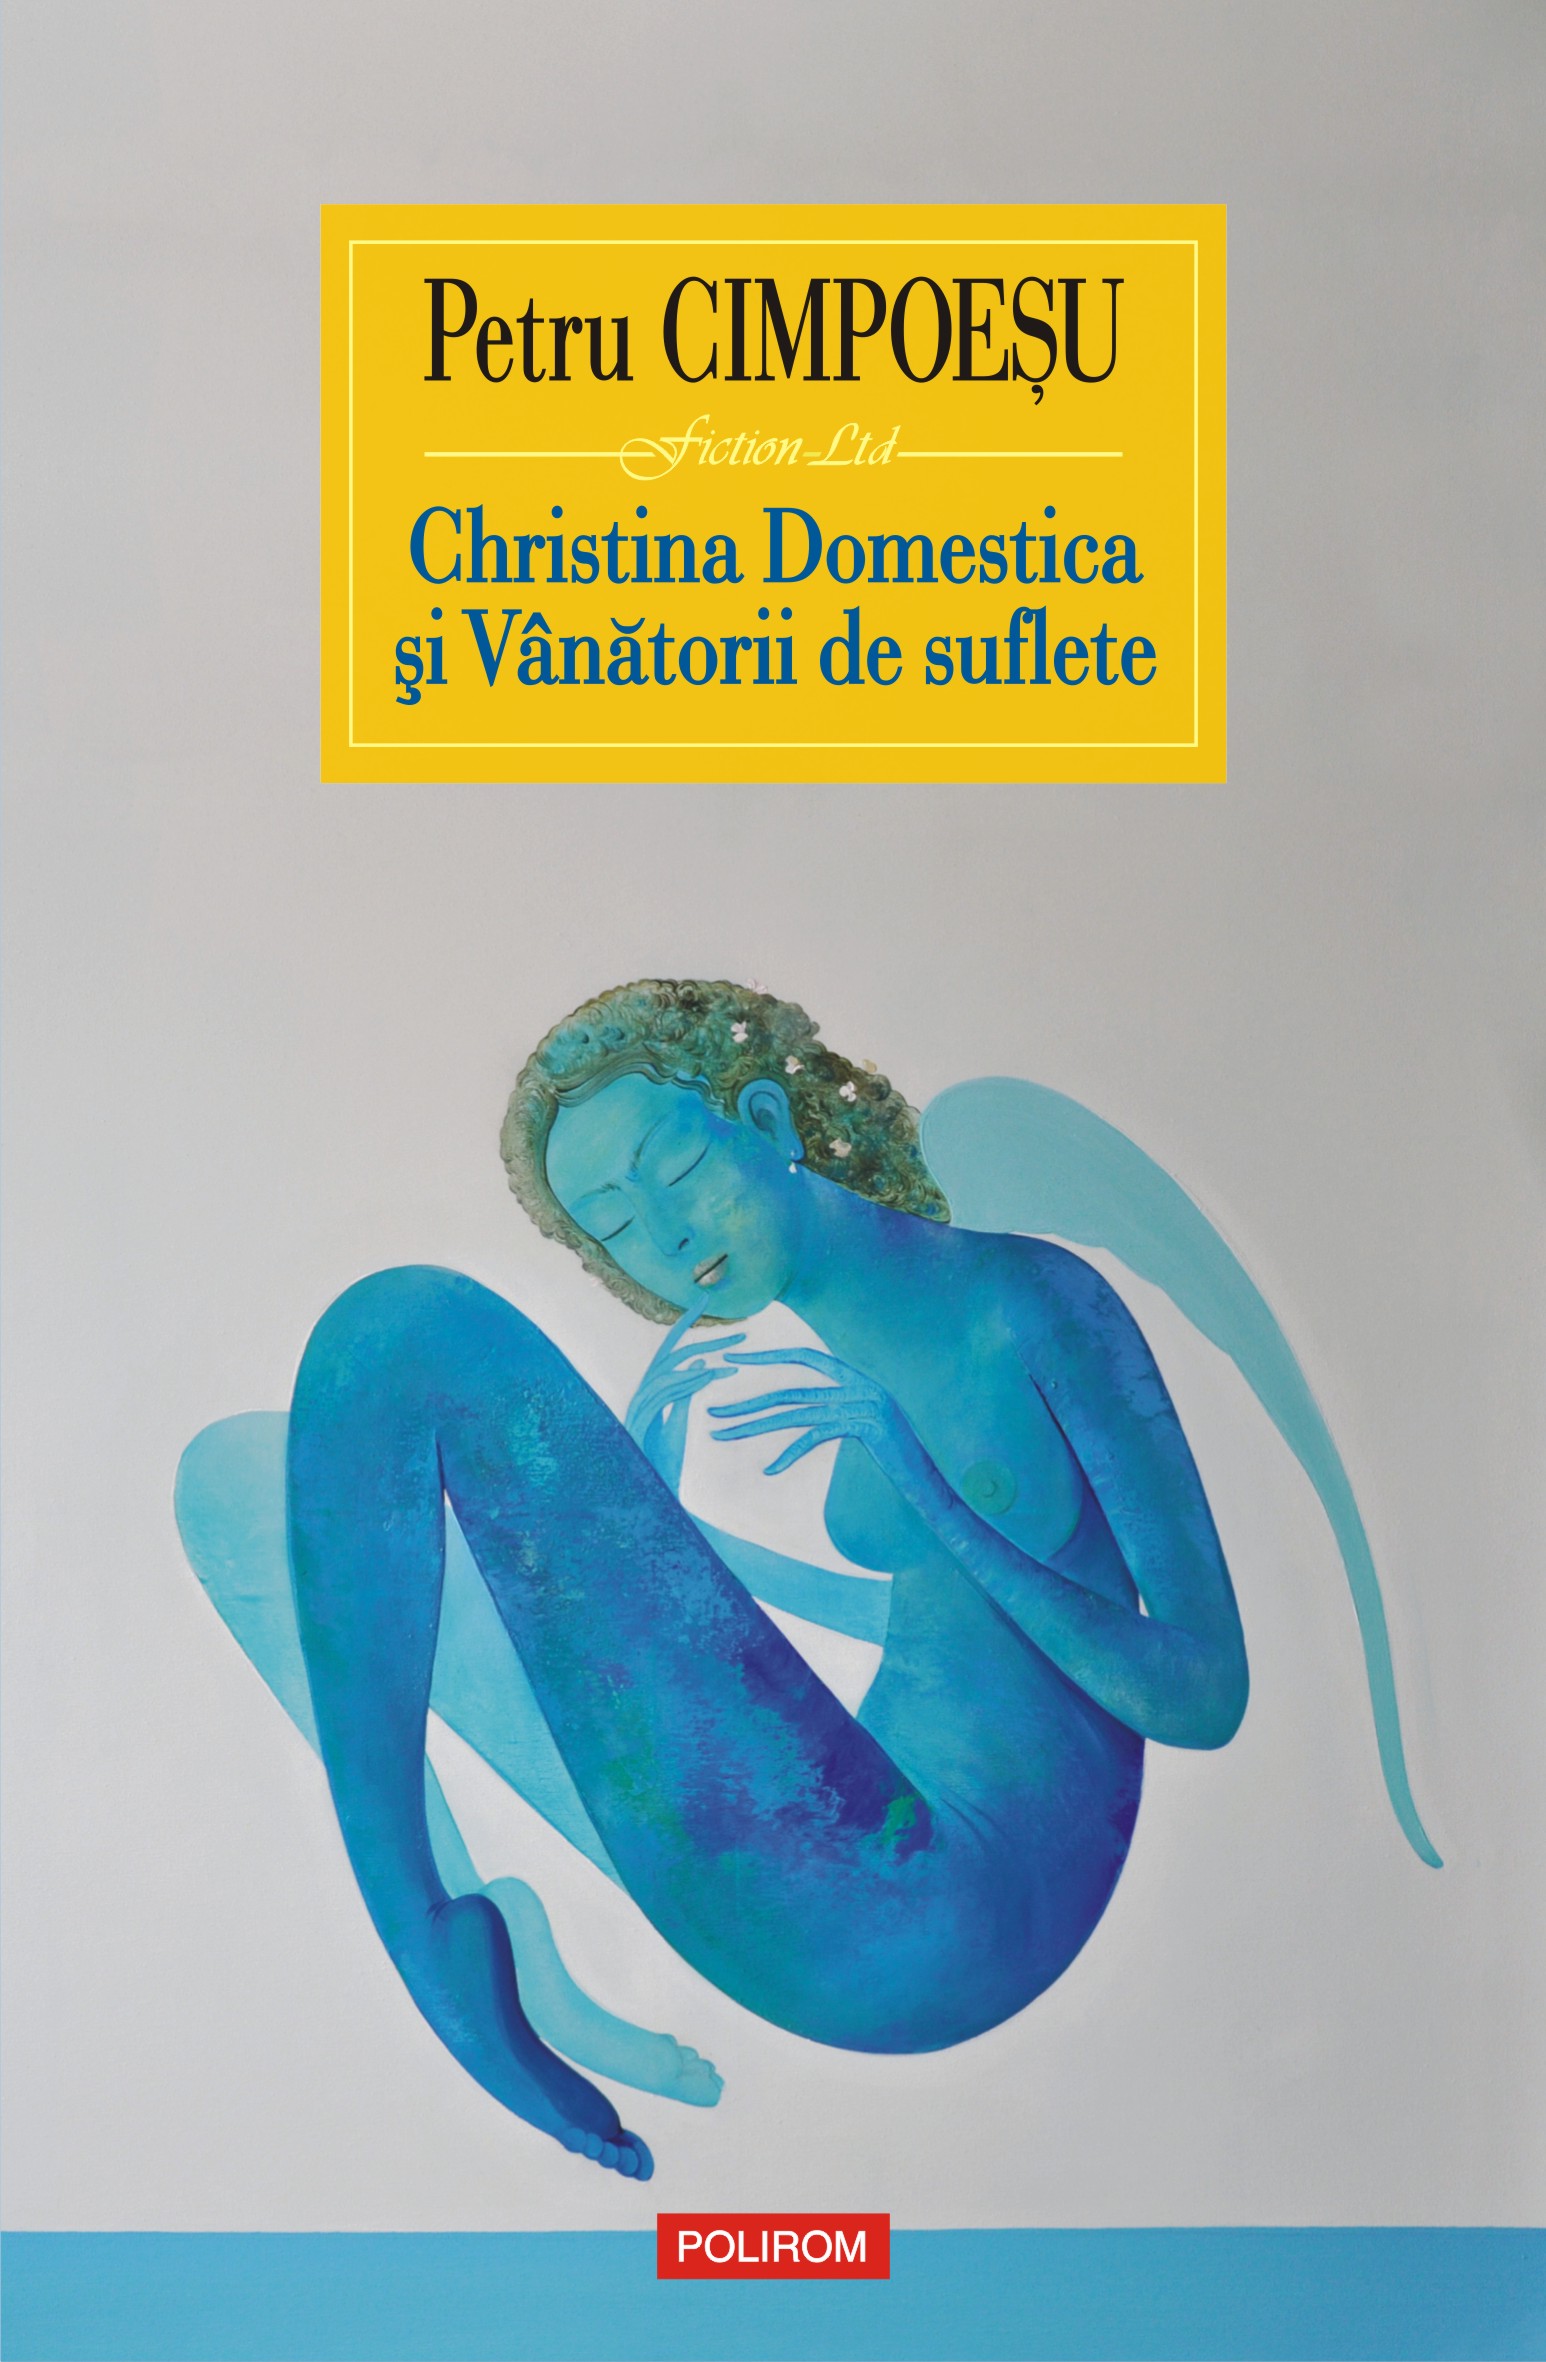 eBook Christina Domestica si Vanatorii de suflete - Petru Cimpoesu